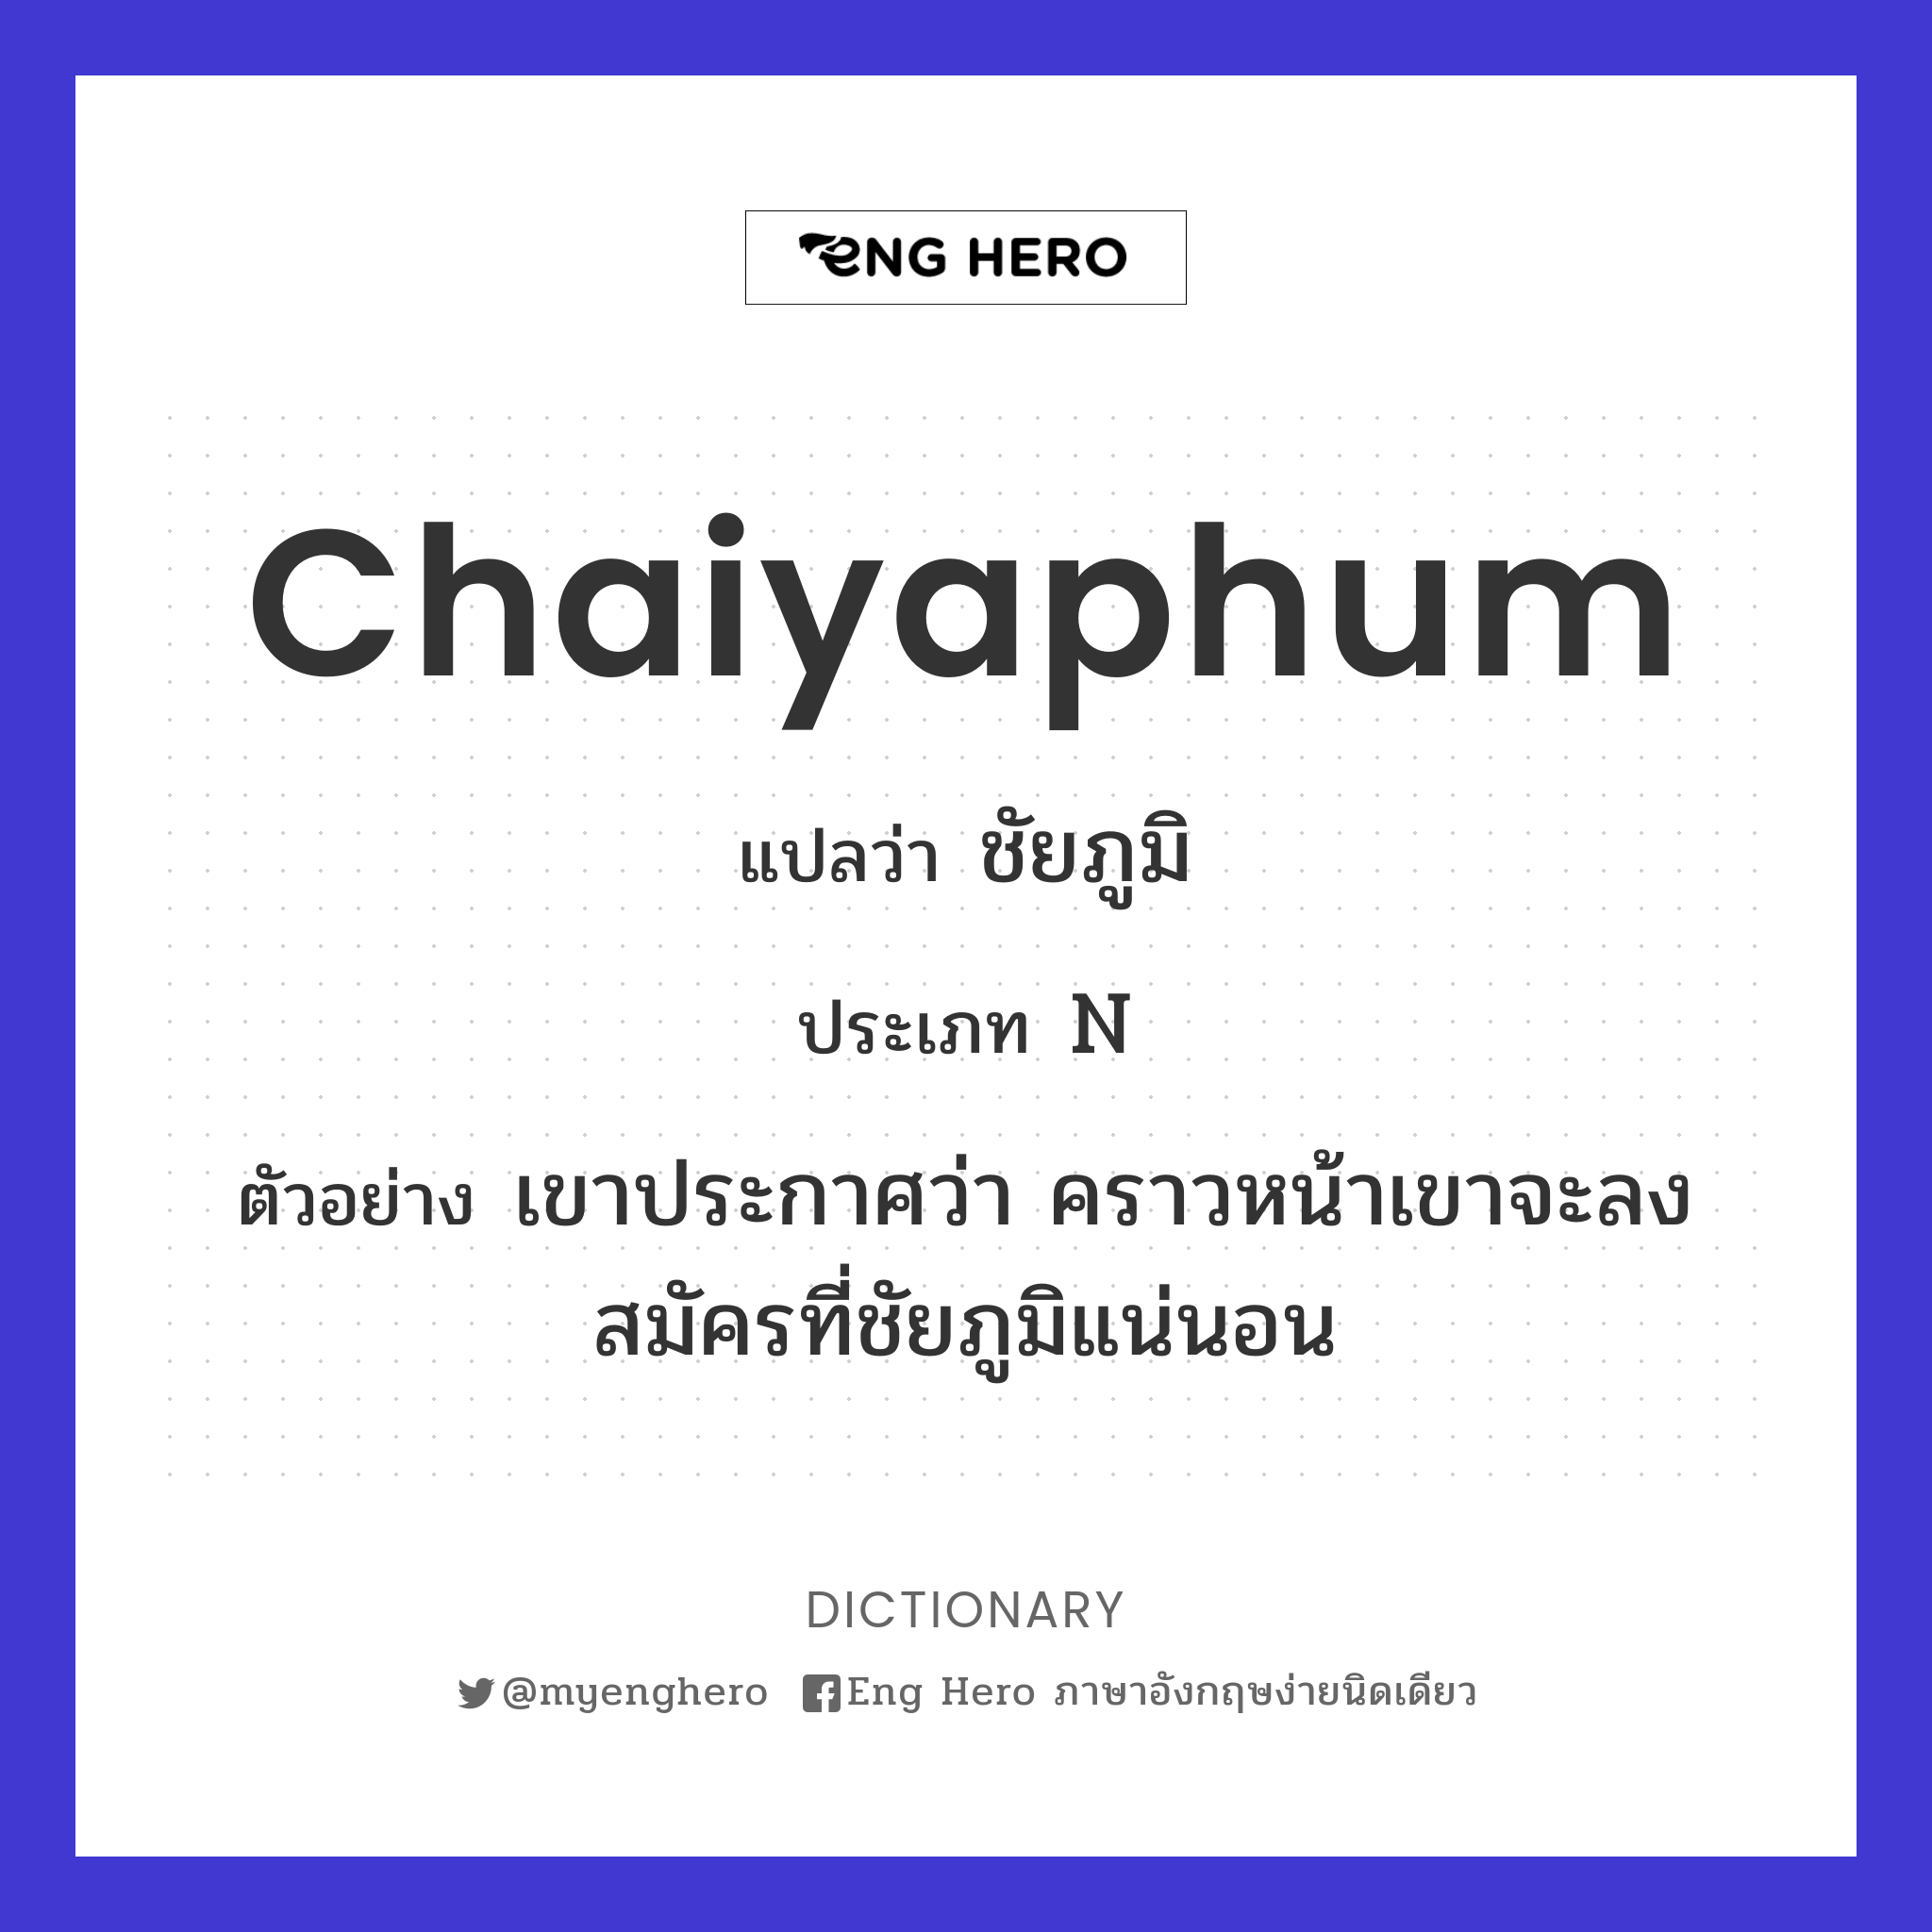 Chaiyaphum